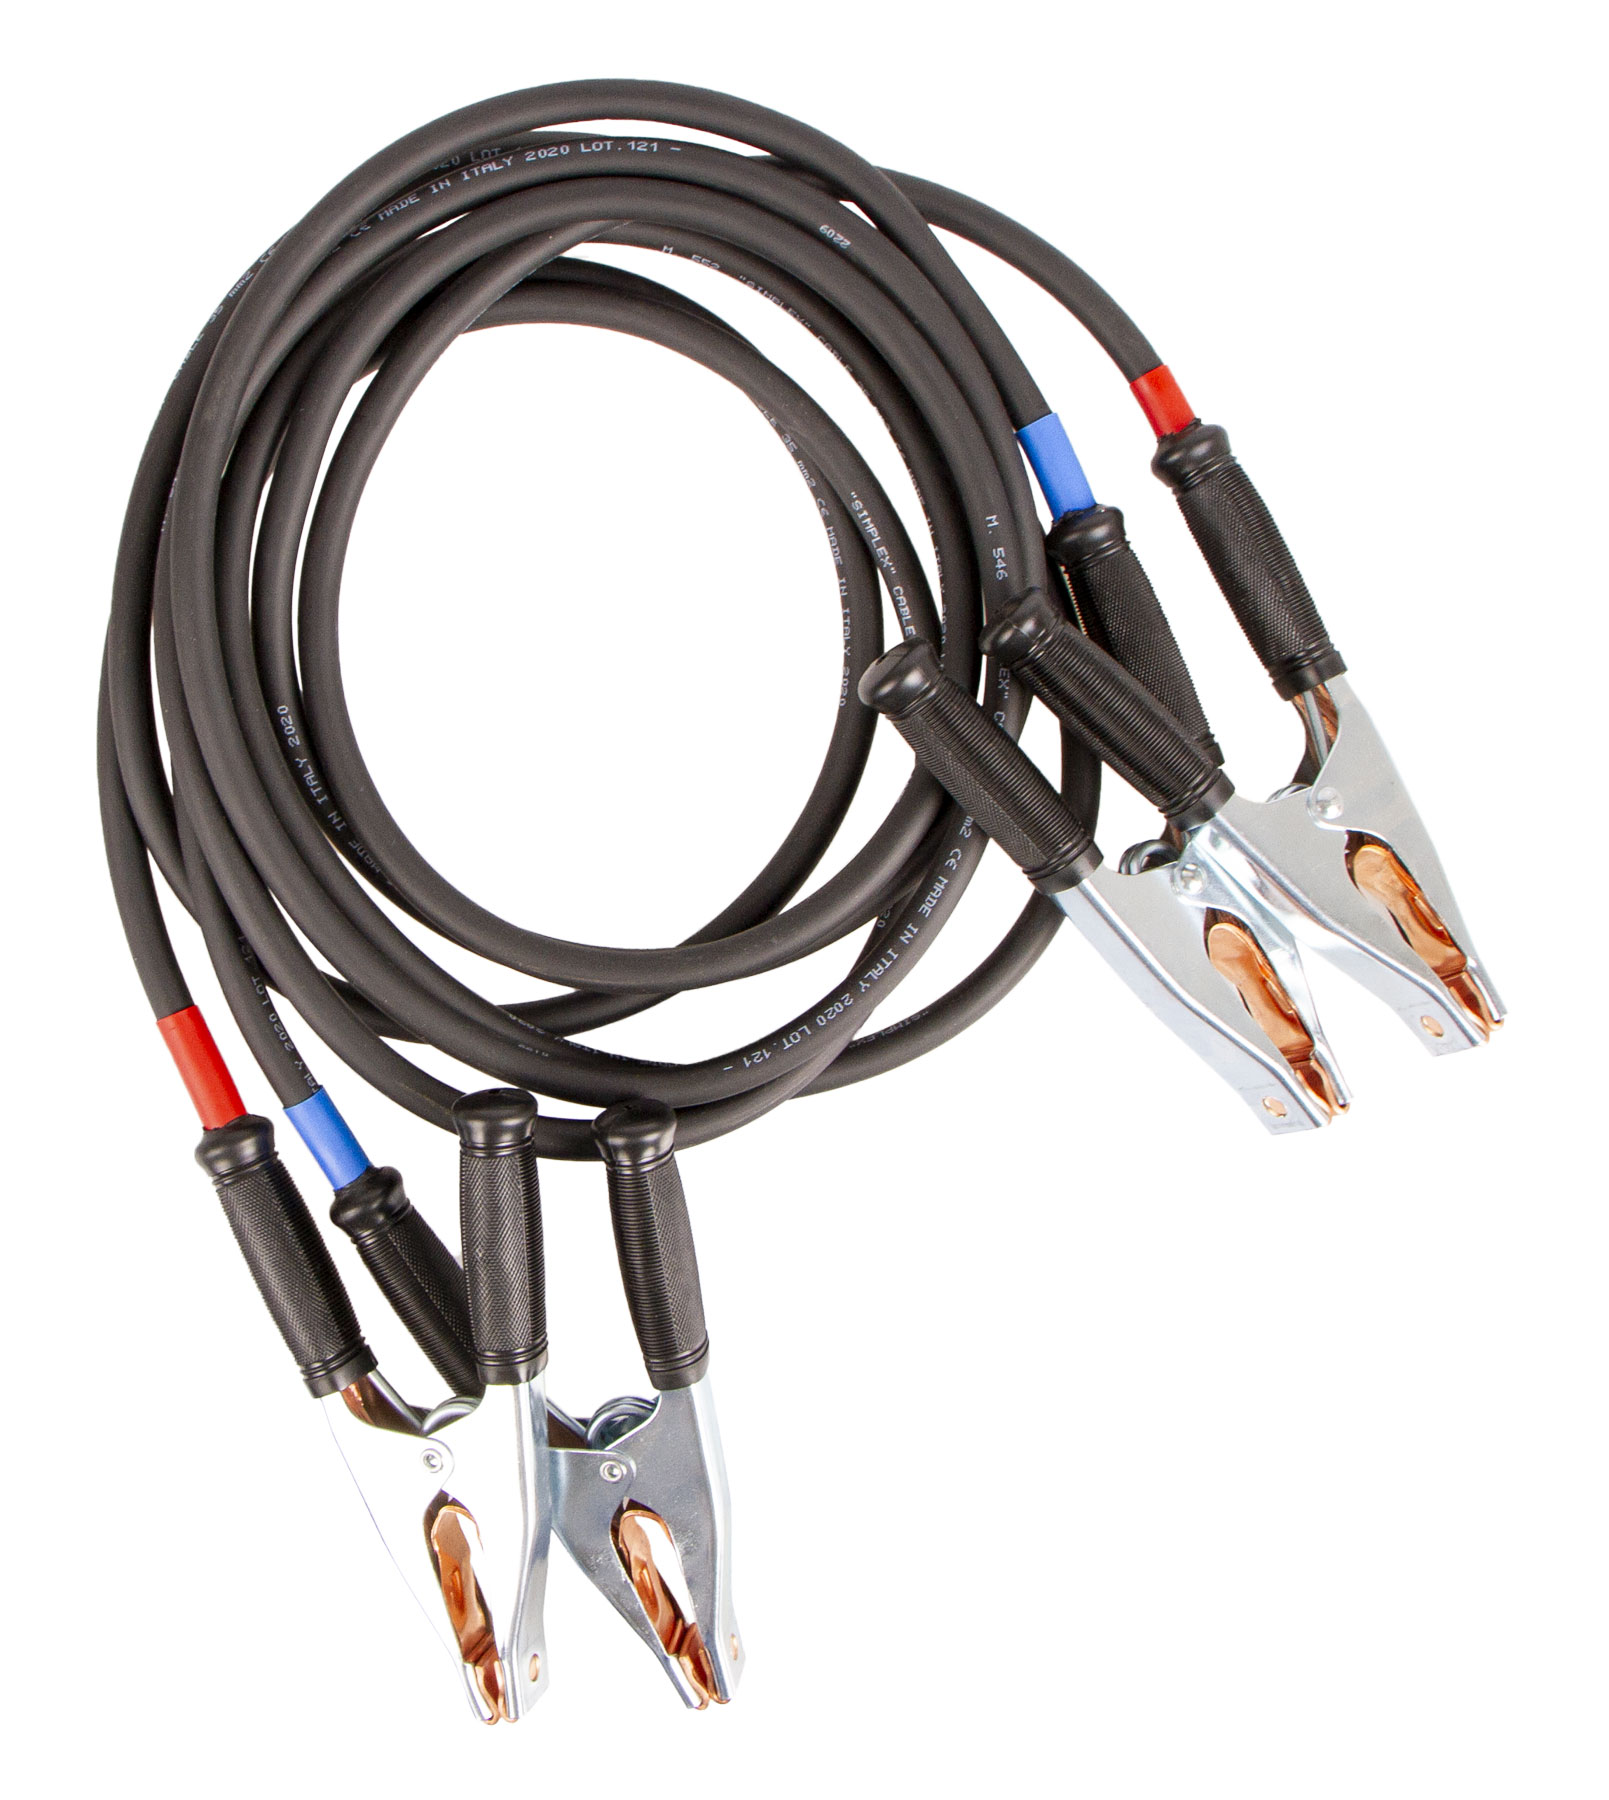 Startovací kabely PROFI - průřez 35 mm, 5 m, 1200 A - 324320502